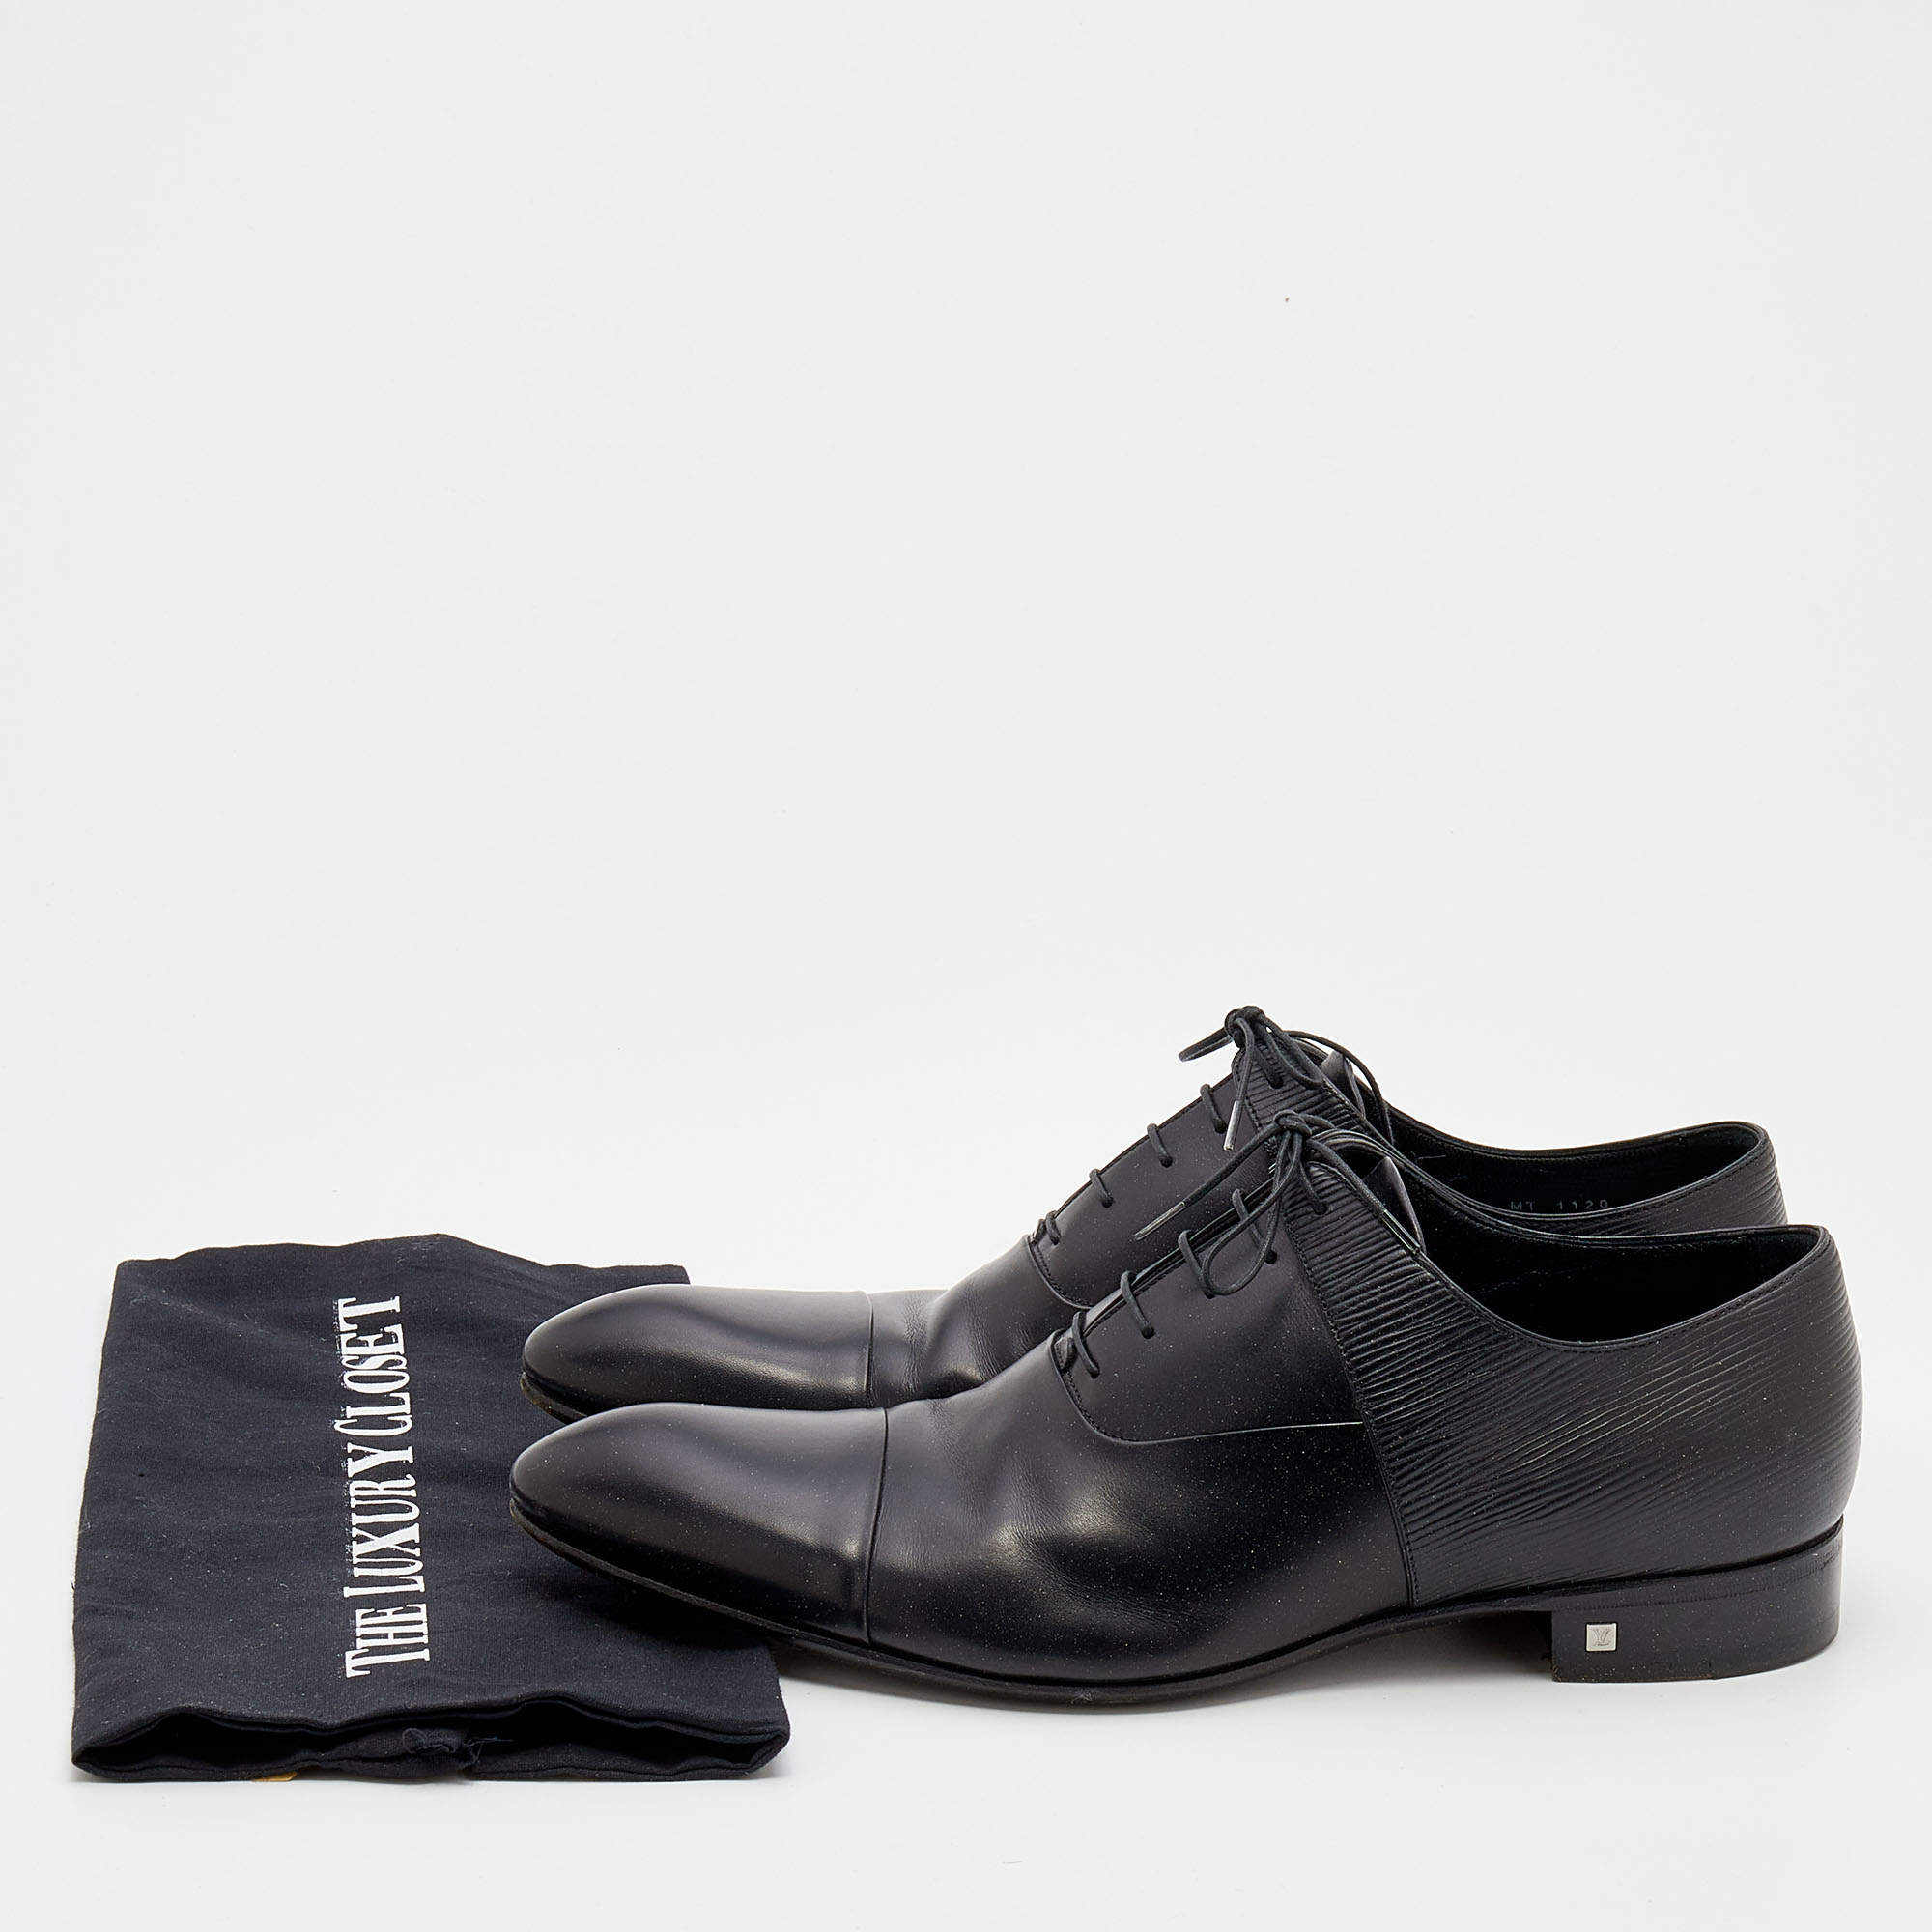 Louis Vuitton Black Epi Leather Lace Up Oxford Size 42